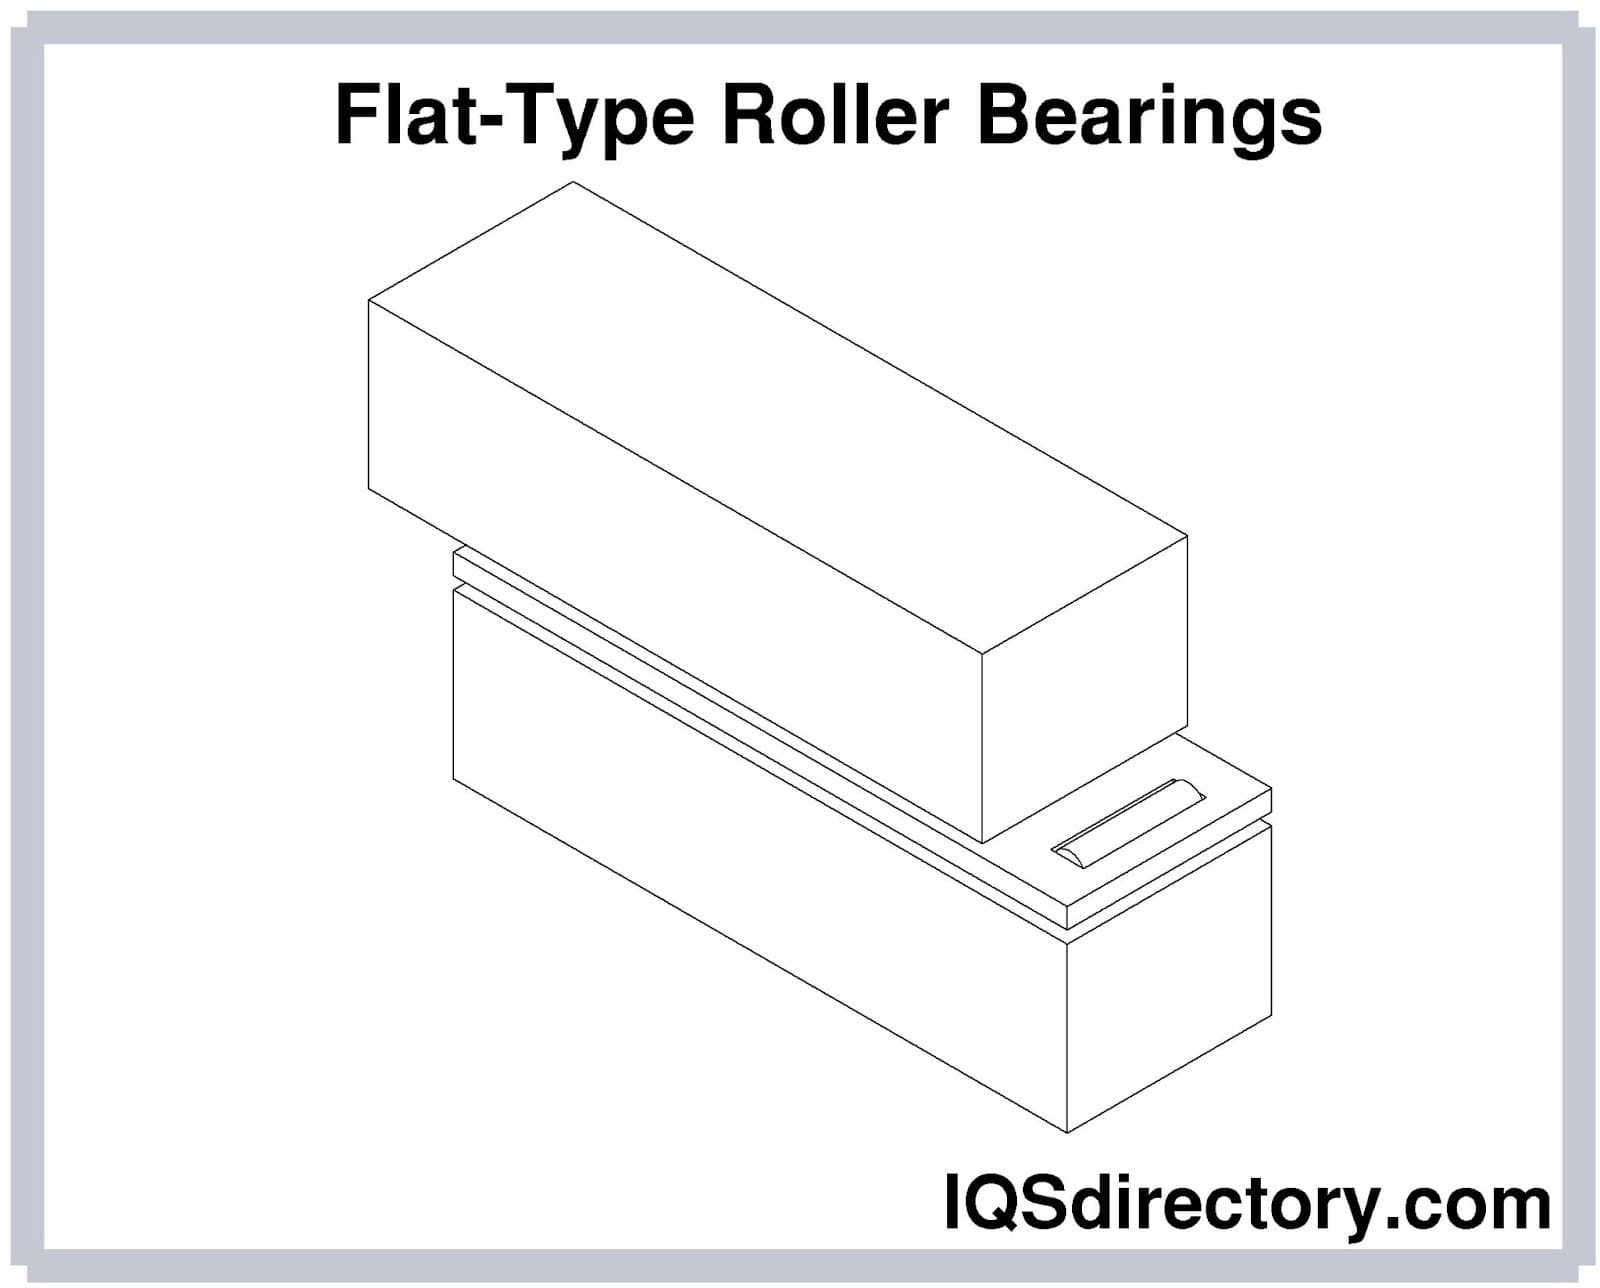 Flat-Type Roller Bearings